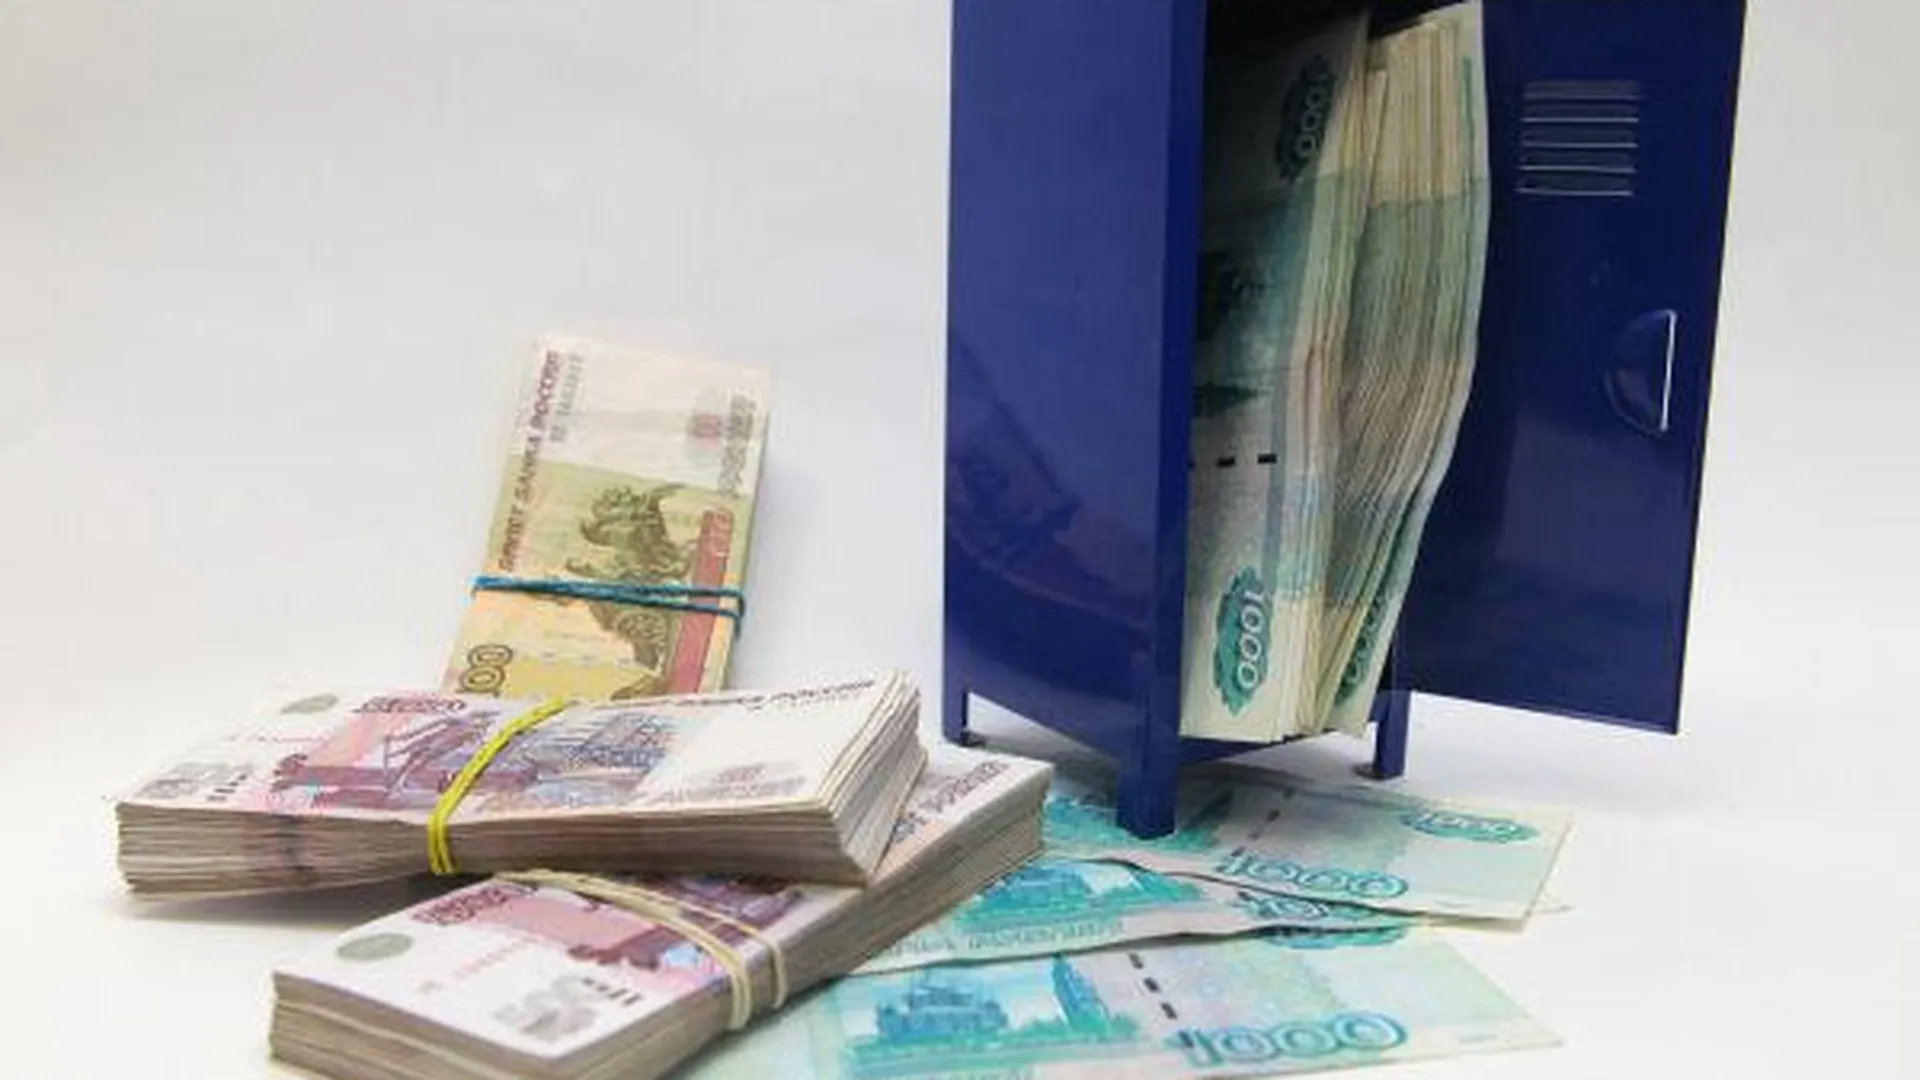 Объем субсидий на развитие бизнеса в МО в 2014 г превысил 400 млн руб